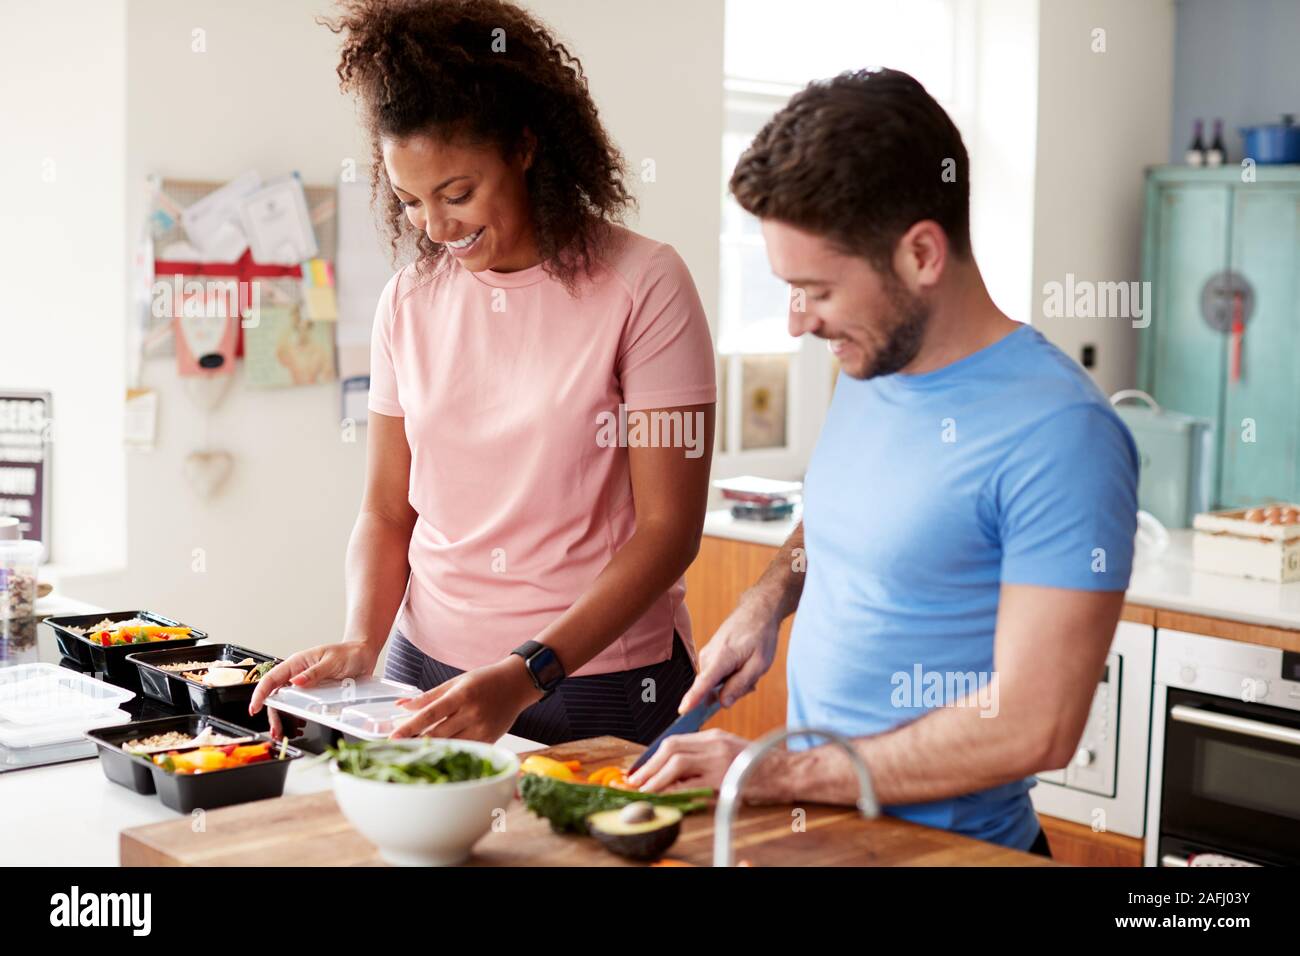 Paar Vorbereitung Charge von gesunden Mahlzeiten zu Hause in der Küche zusammen Stockfoto